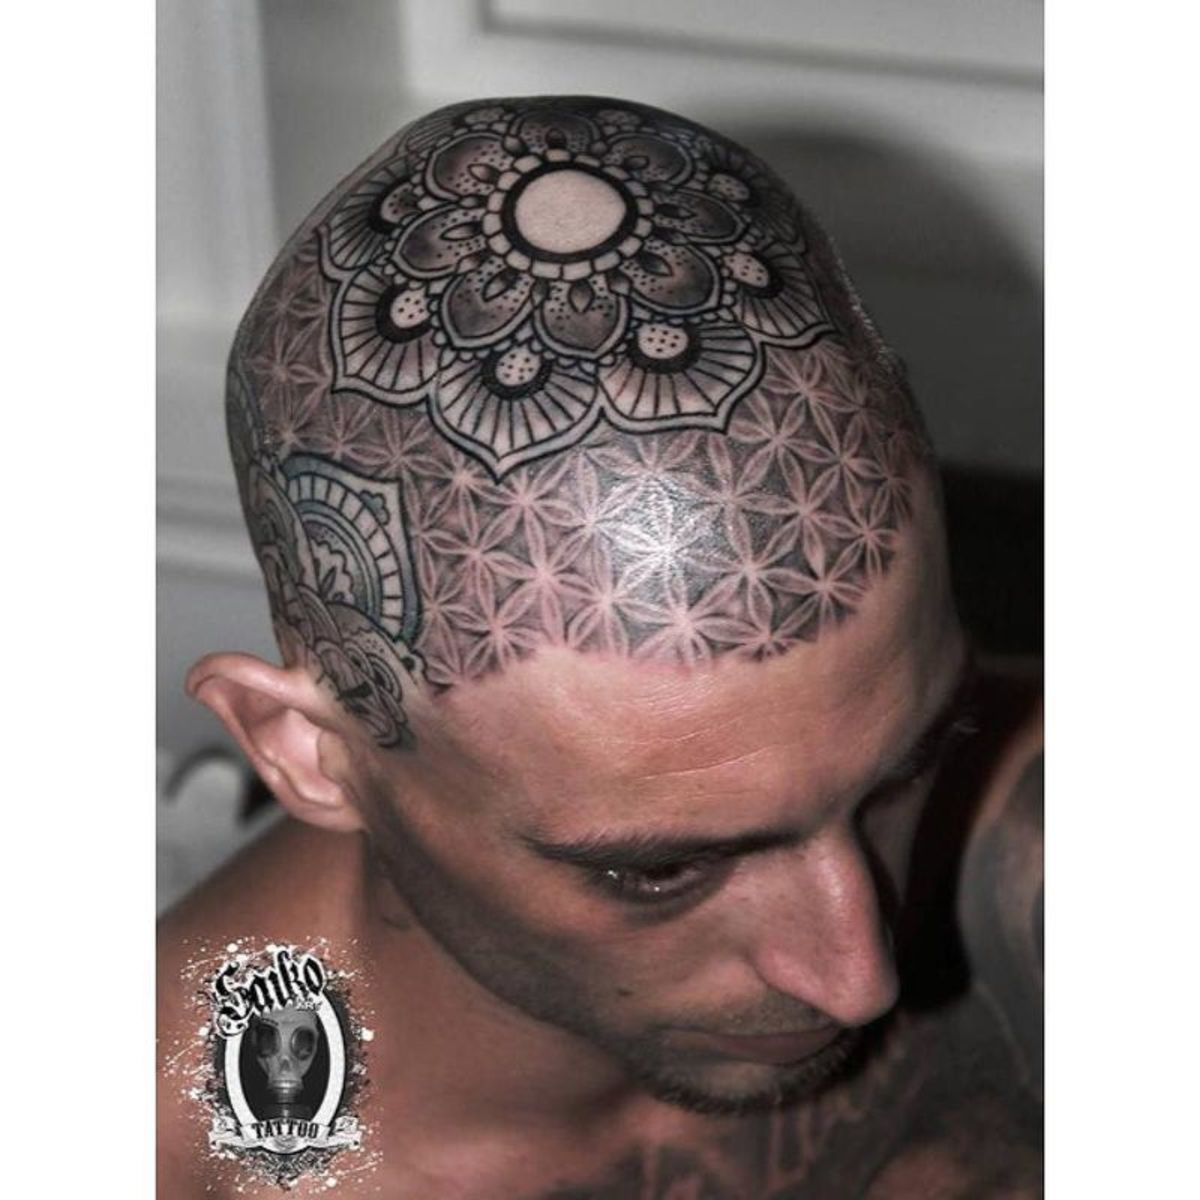 tetoválás, tetoválóművész, tetoválásötlet, tetoválás ihlet, tetoválás tervezés, fej tetoválás, tintával, inkedmag